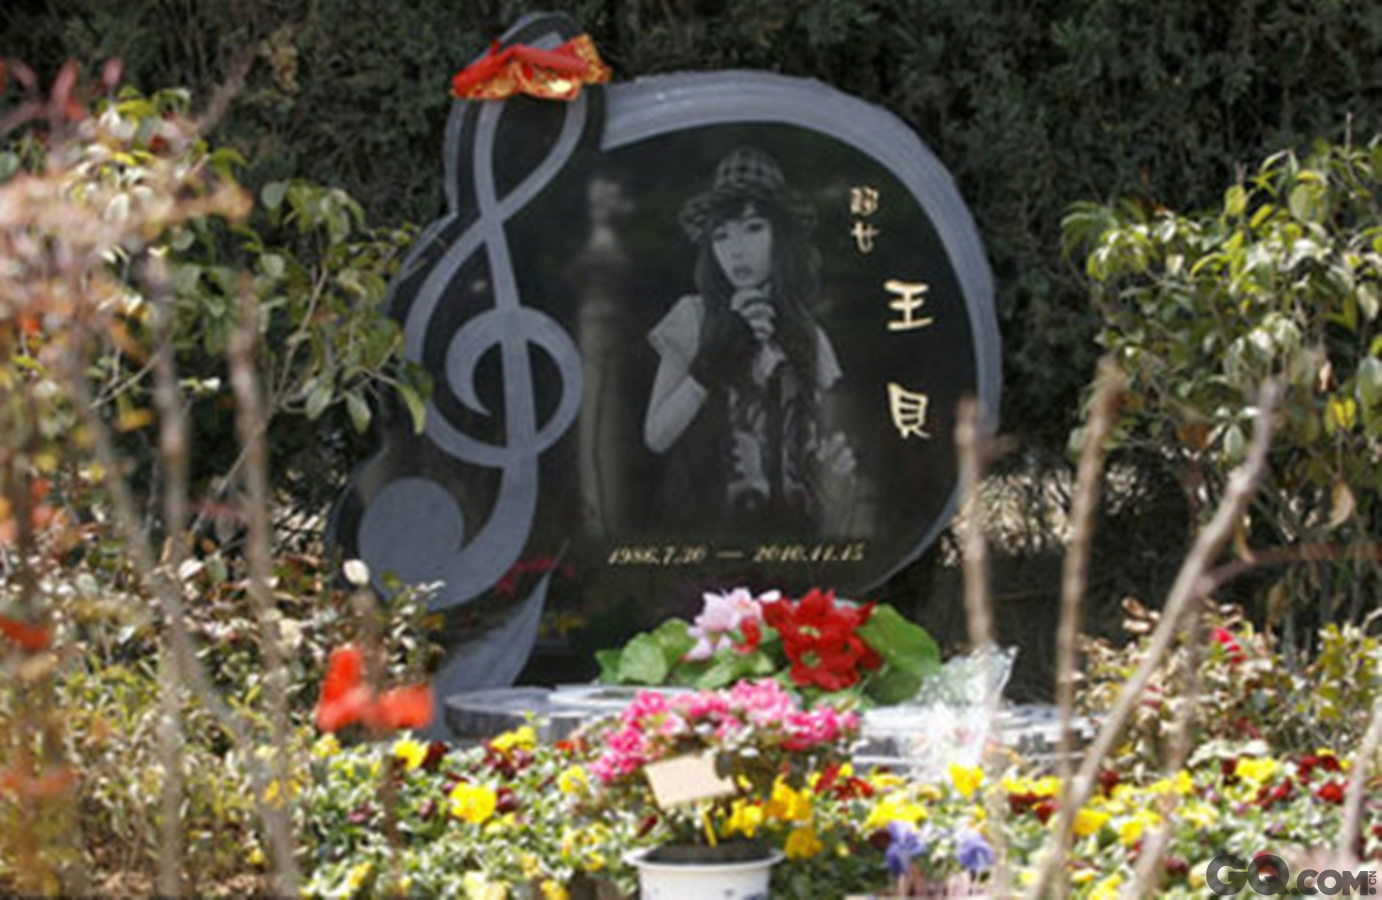 王贝墓碑上有个大大的音符图据，因整容致死的超女王贝，已于清明前的3月27日，正式在武汉石门峰“名人墓”安葬。王贝的墓碑上刻着巨大音符，碑前有粉丝留下的话筒和鲜花，保安称这样的墓价值不菲。